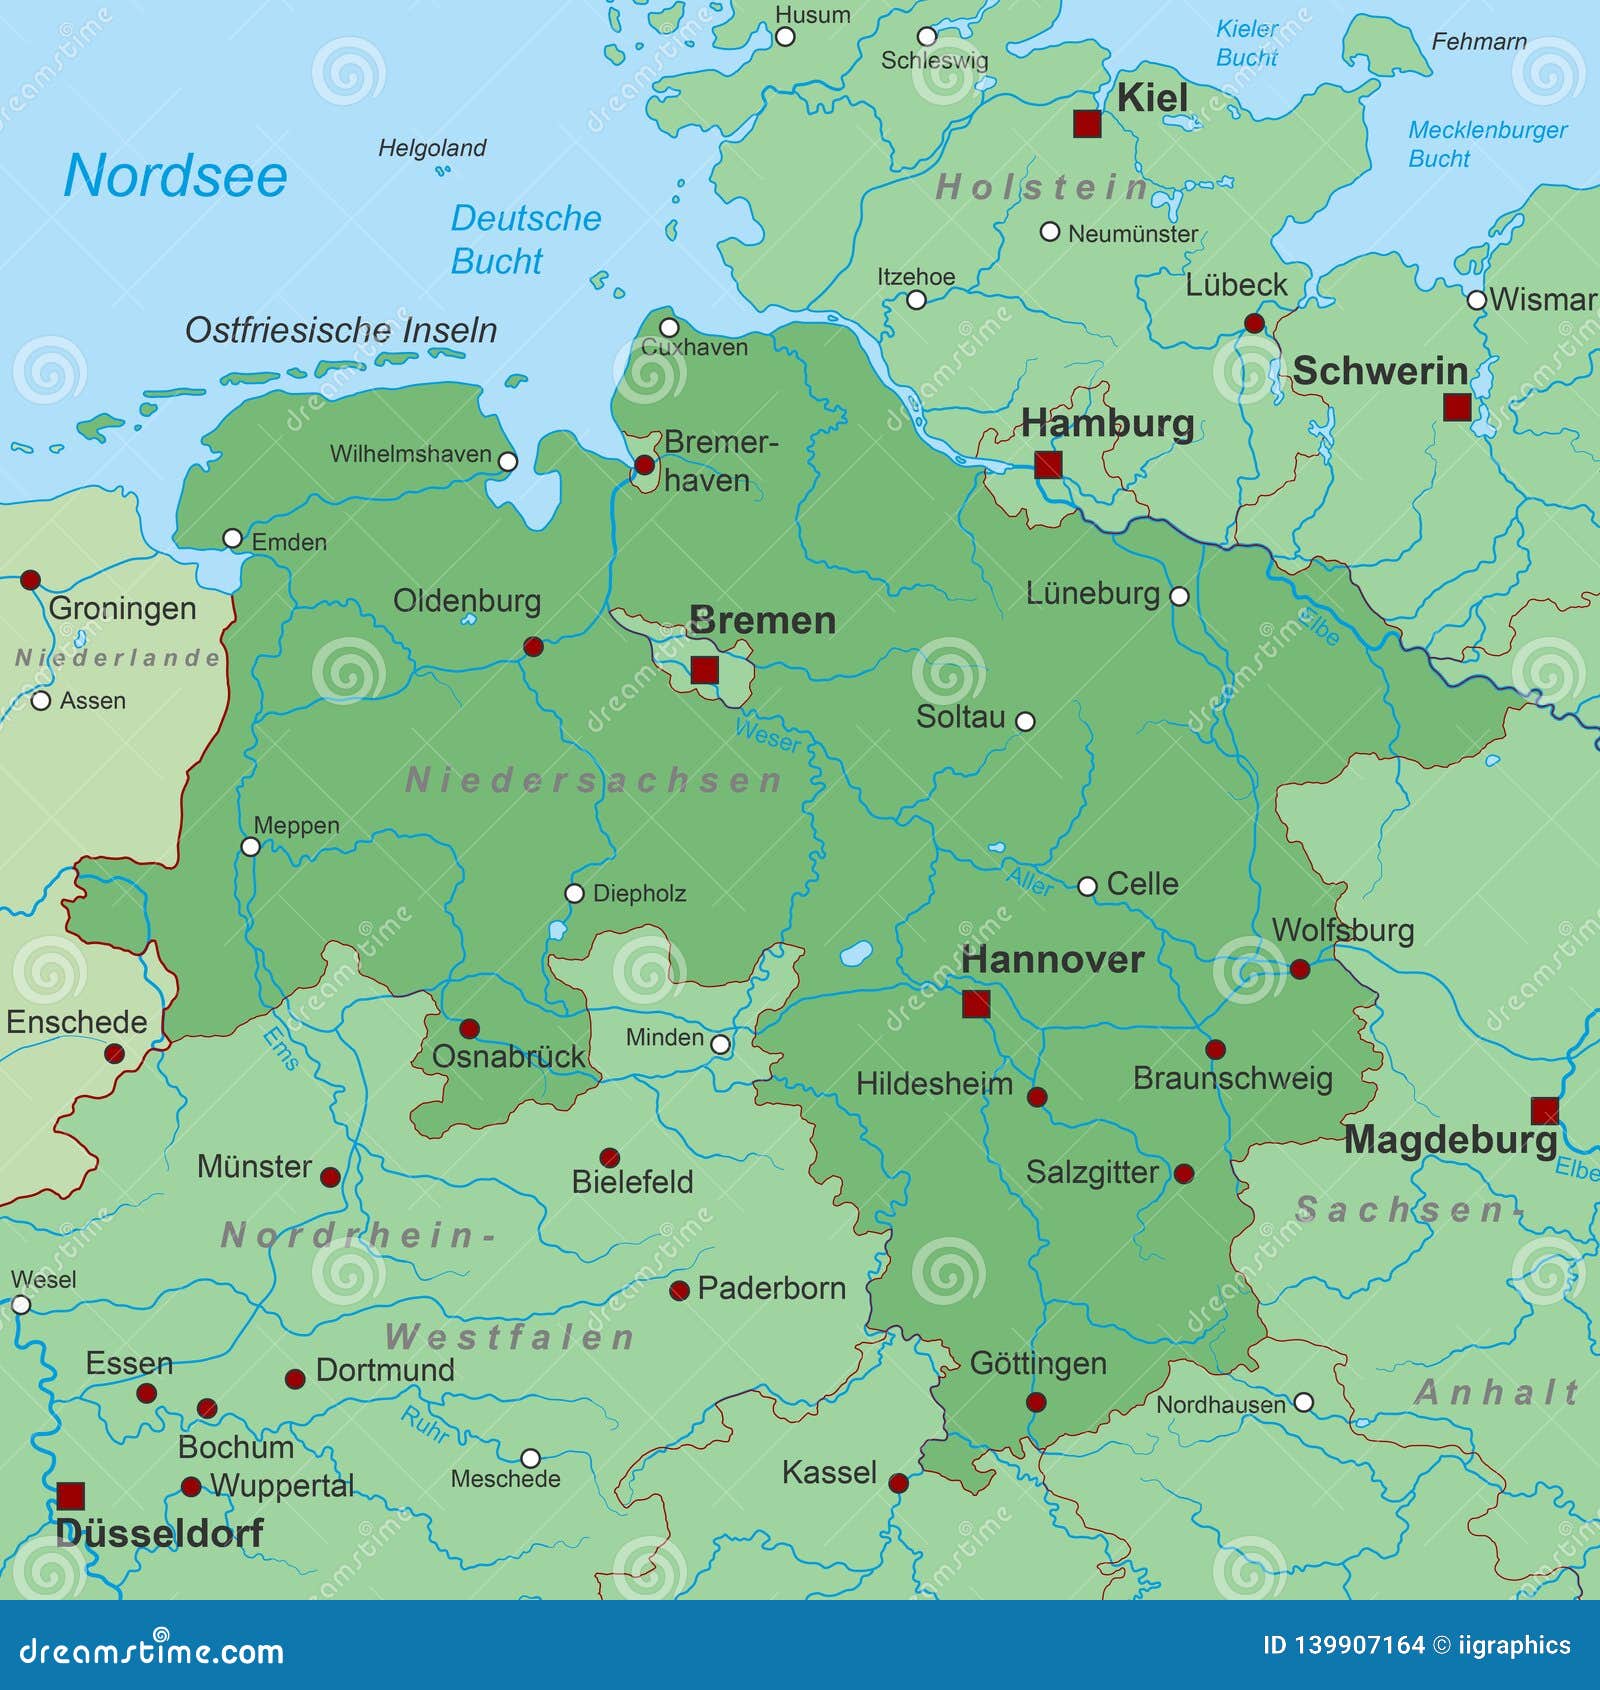 Ганновер на карте. Ганновер на карте Германии. Ганновер Германия на карте Германии. Ганновер город в Германии на карте. Город Ганновер на карте.